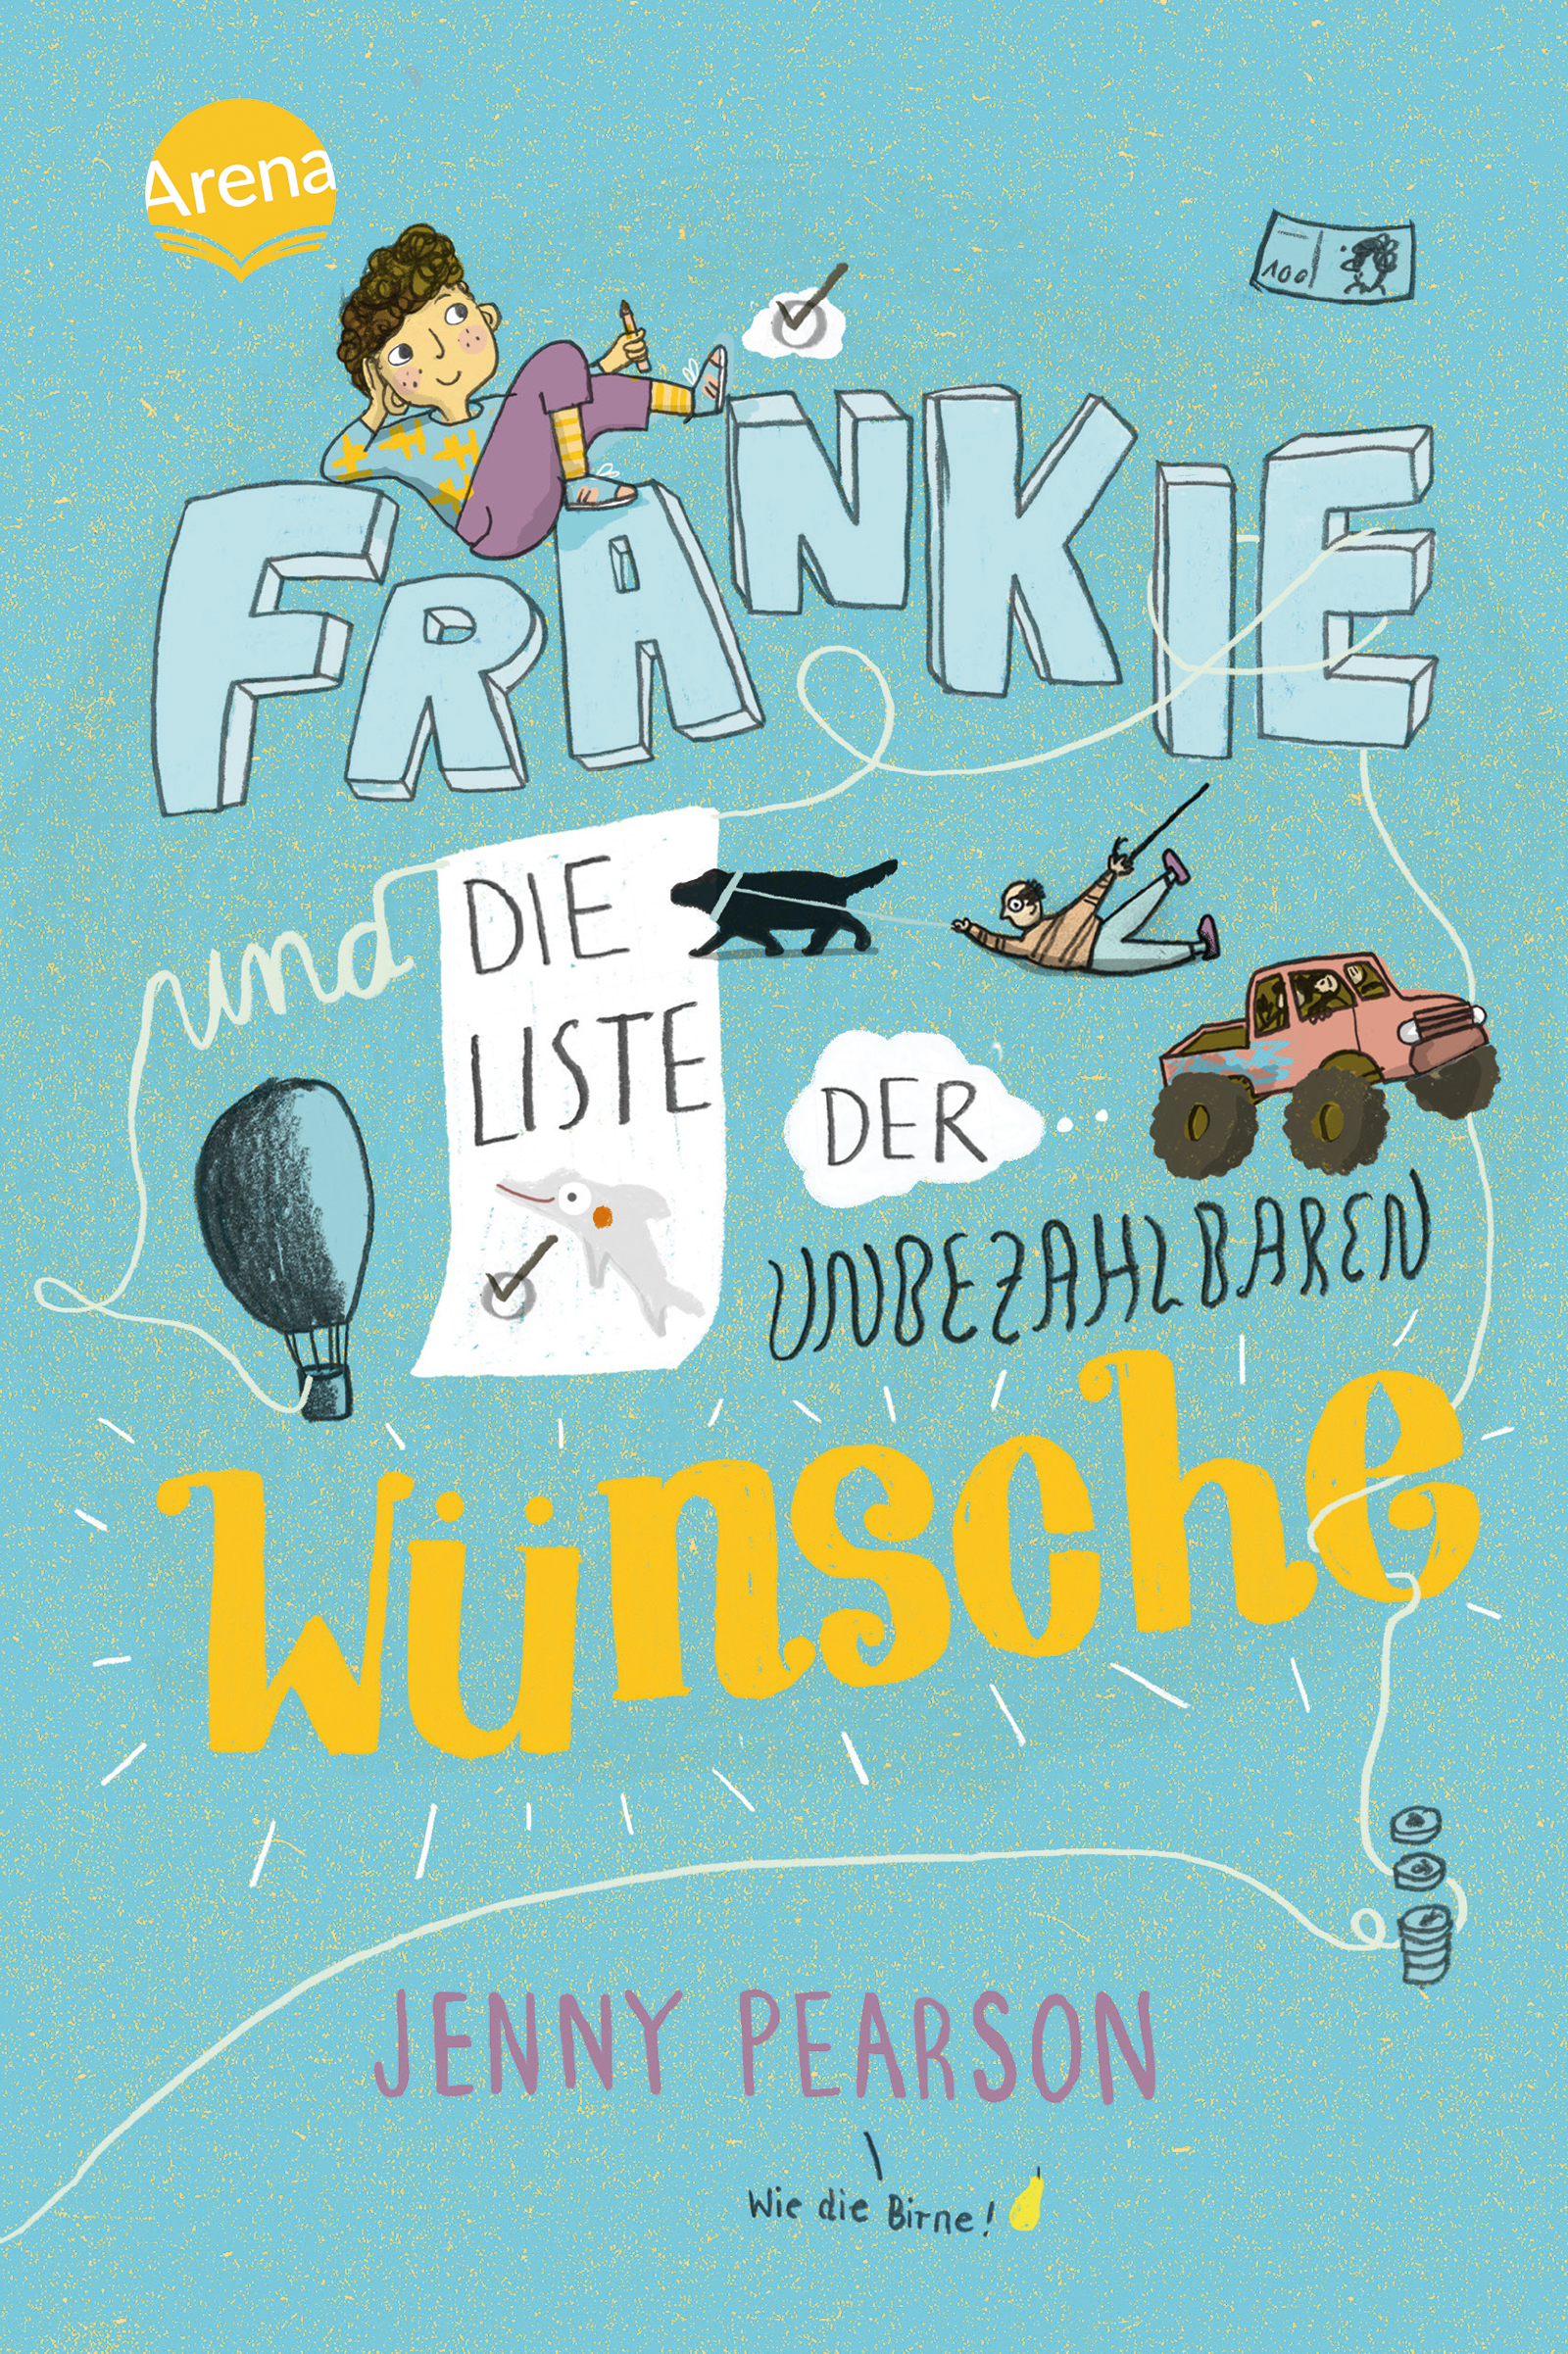 Buchcover "Frankie und die Liste der unbezahlbaren Wünsche", Arena 